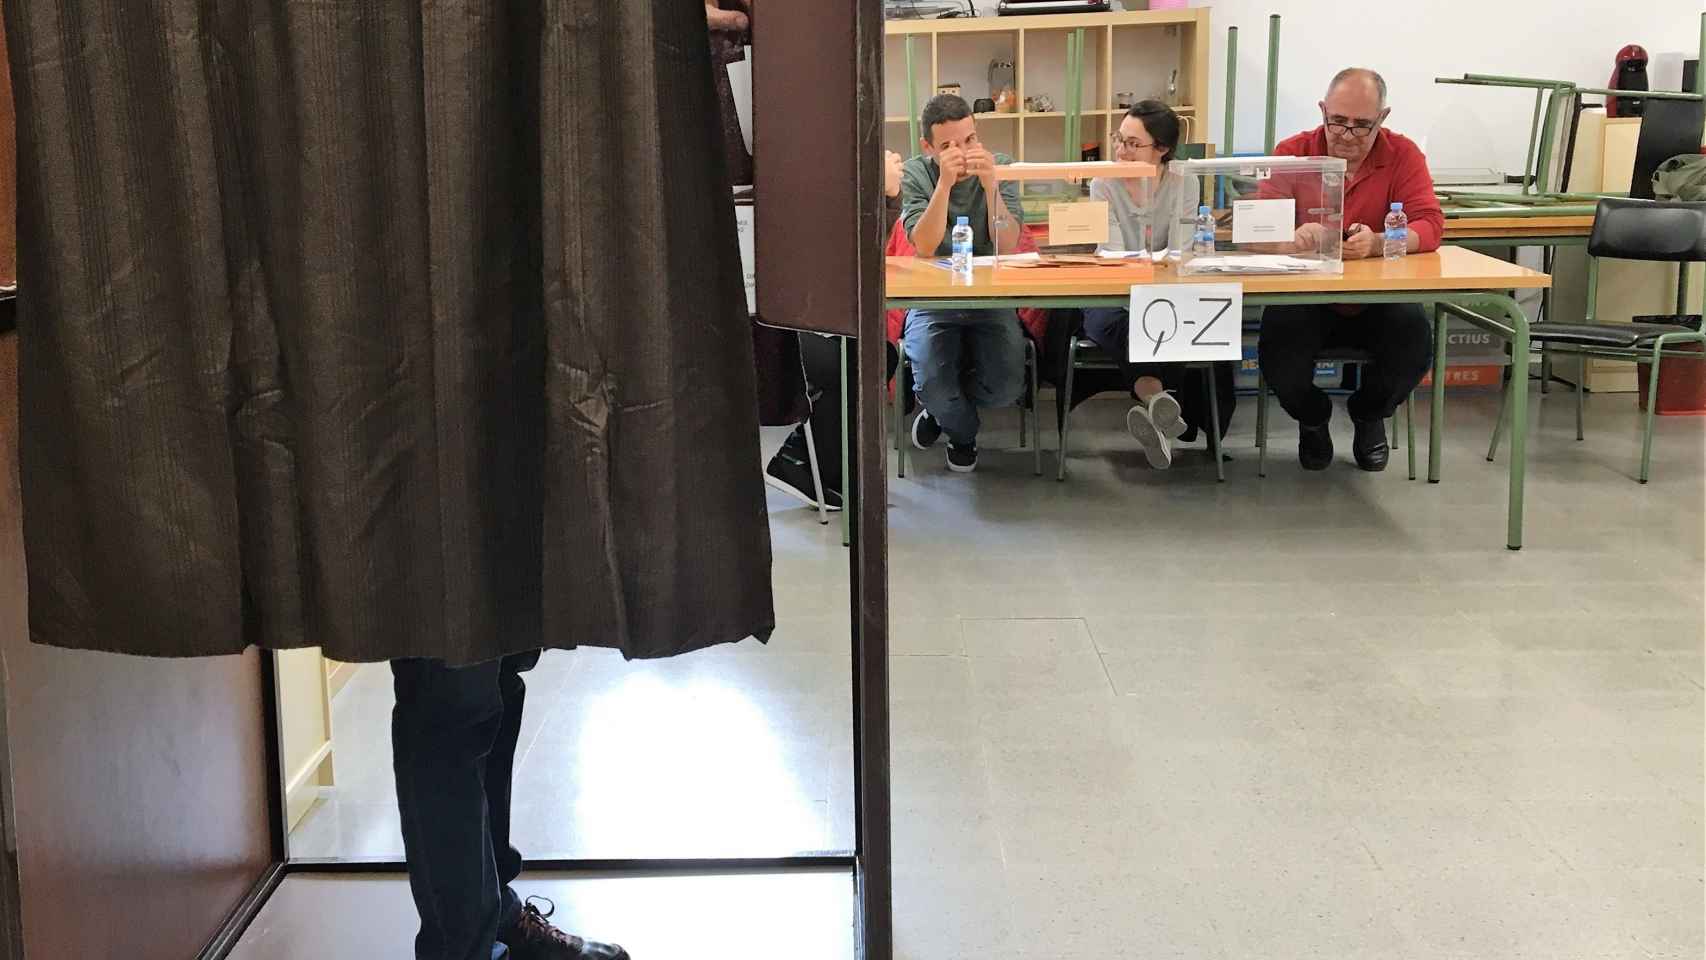 Colegio electoral en Barcelona durante las elecciones generales del 28 de abril de 2019